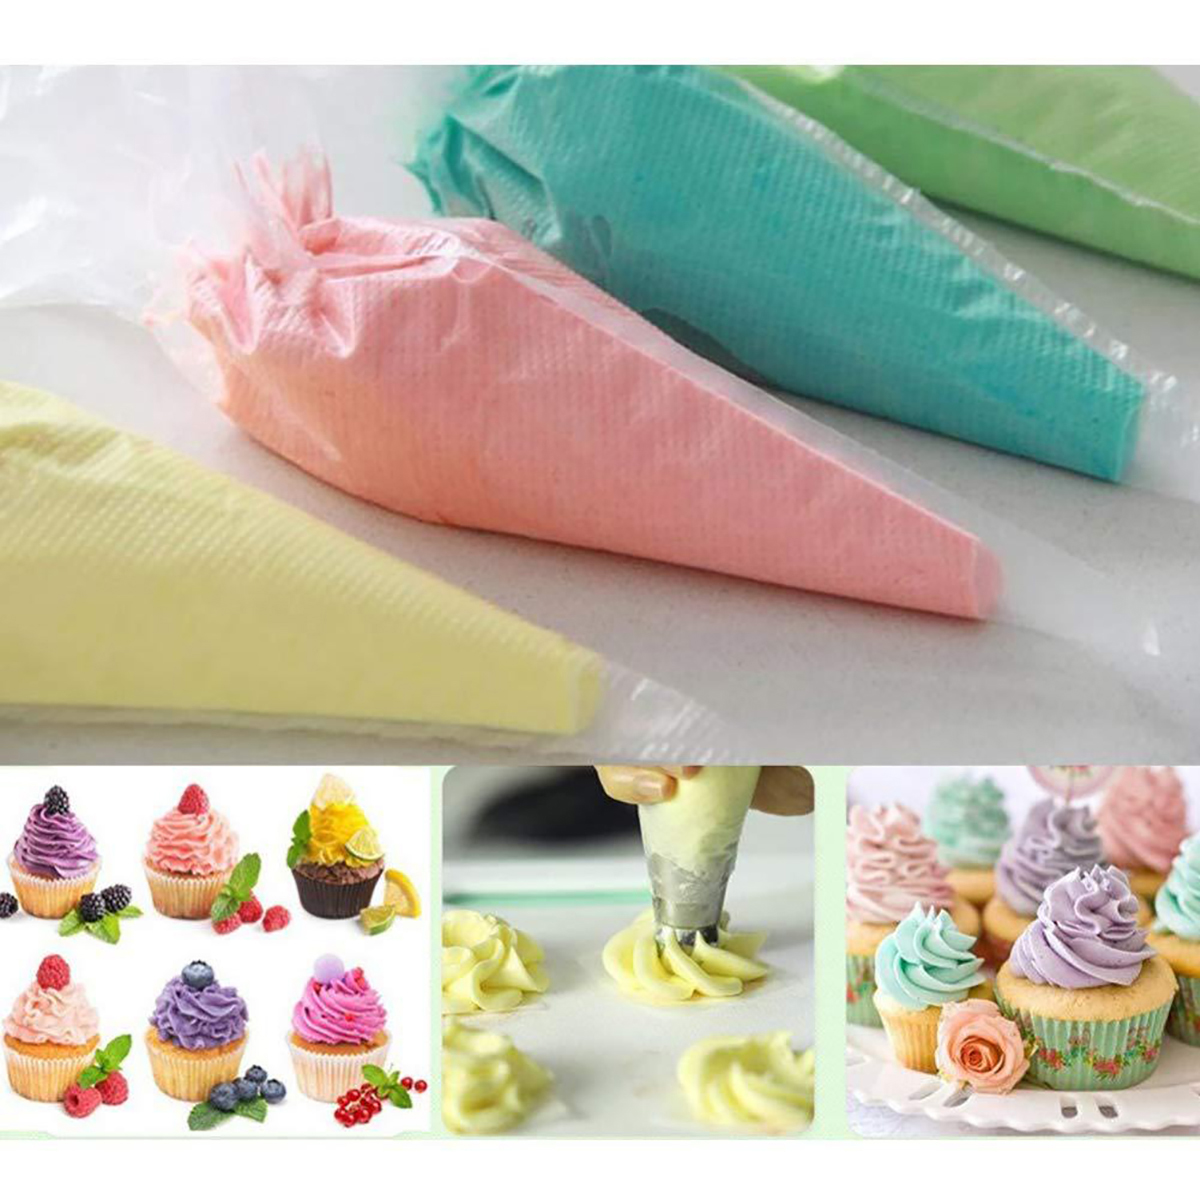 38727883-PCS-Cake-Decorating-Supplies-Kits-Pastry-Supplies-DIY-Tools-1849126-13